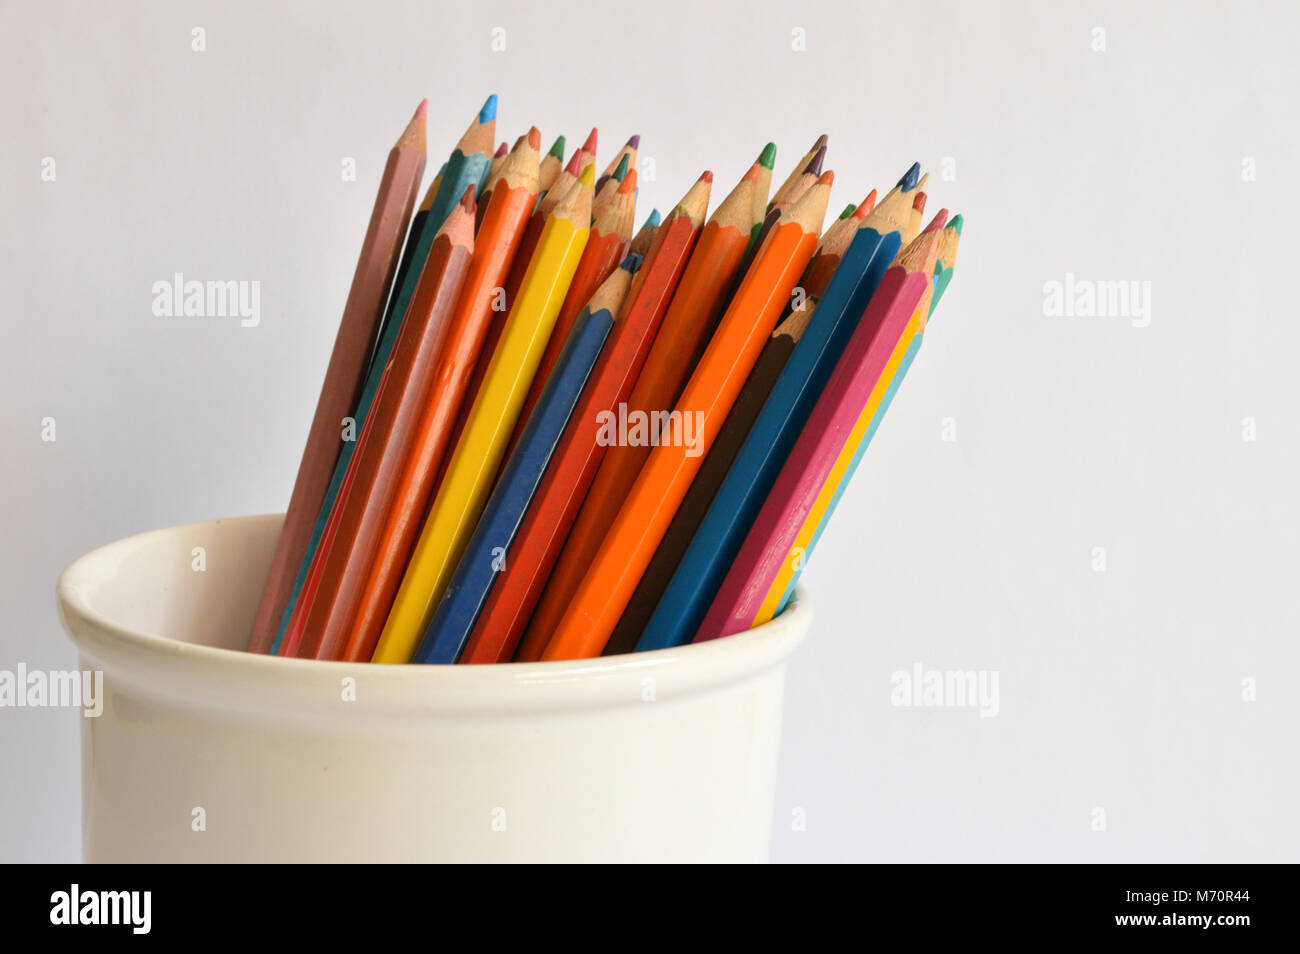 Buntstifte in einem Glas auf einem hellen Hintergrund Stockfoto